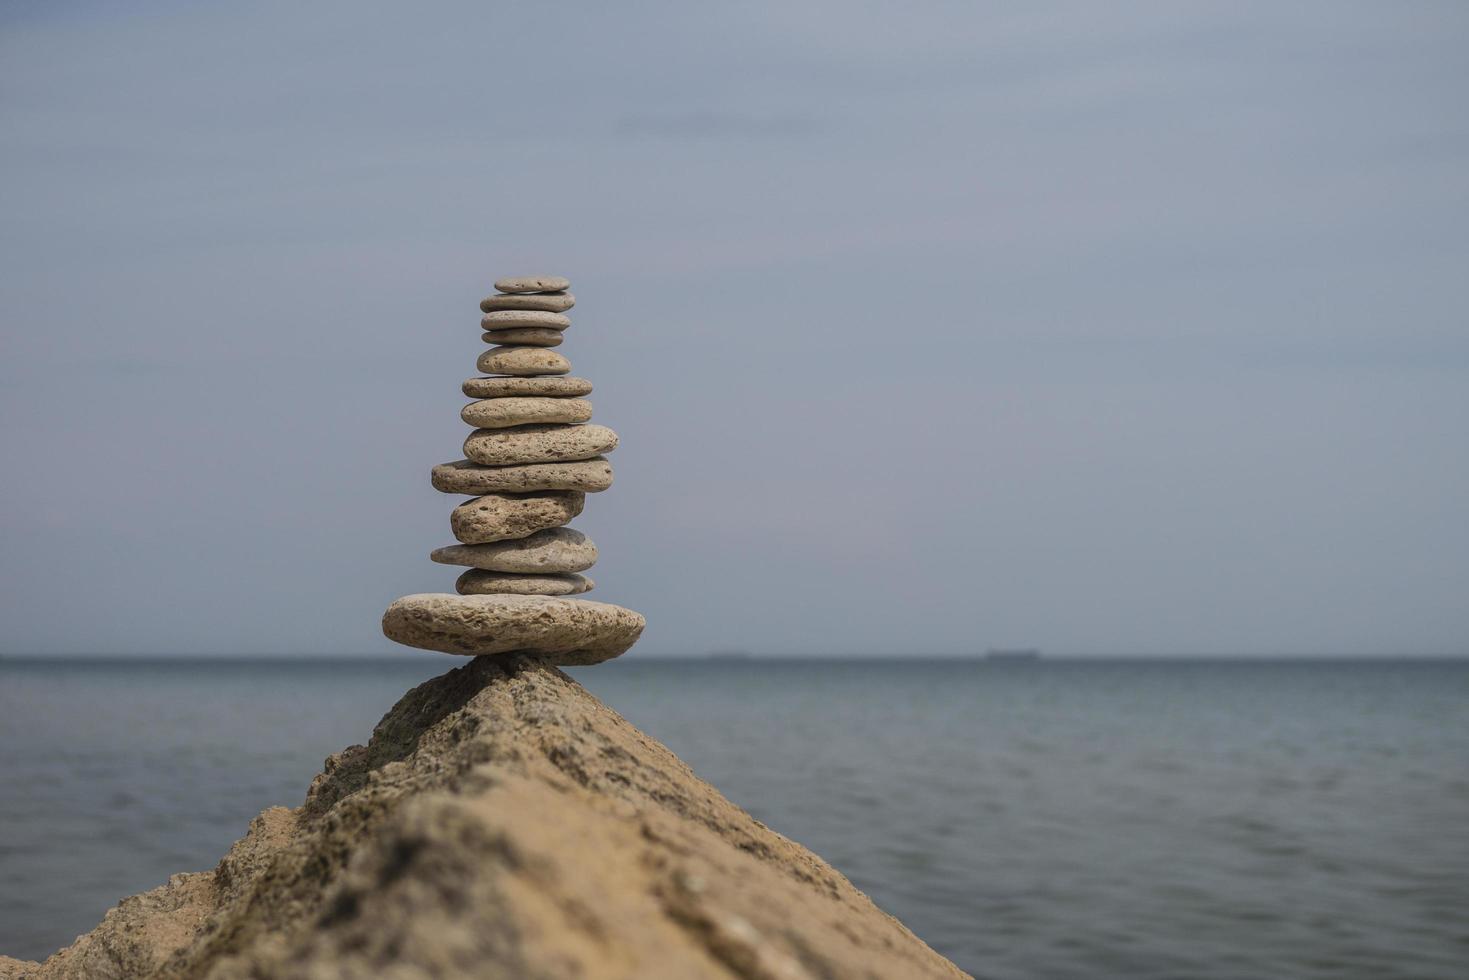 bilanciamento piramide di pietre su una grande pietra in riva al mare foto